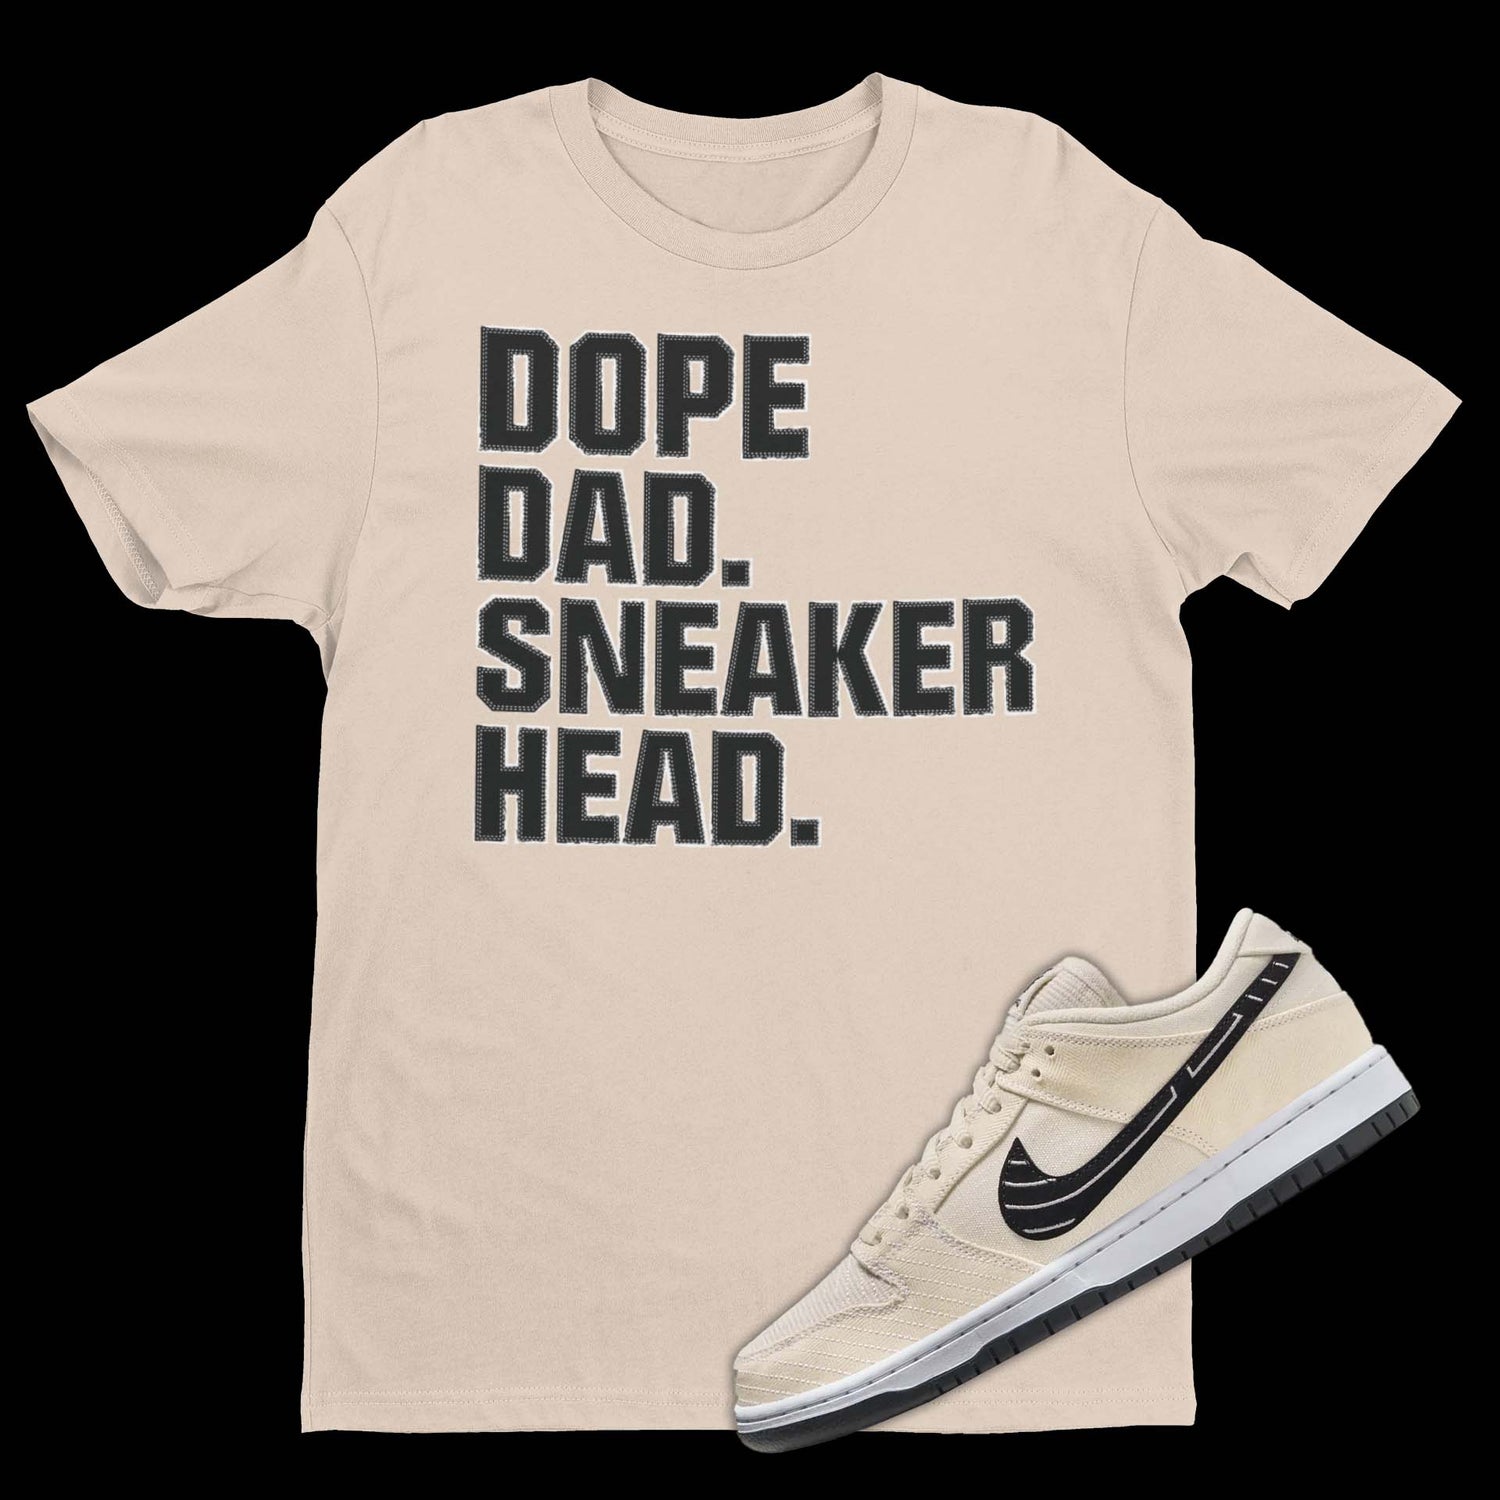 Sneaker Head